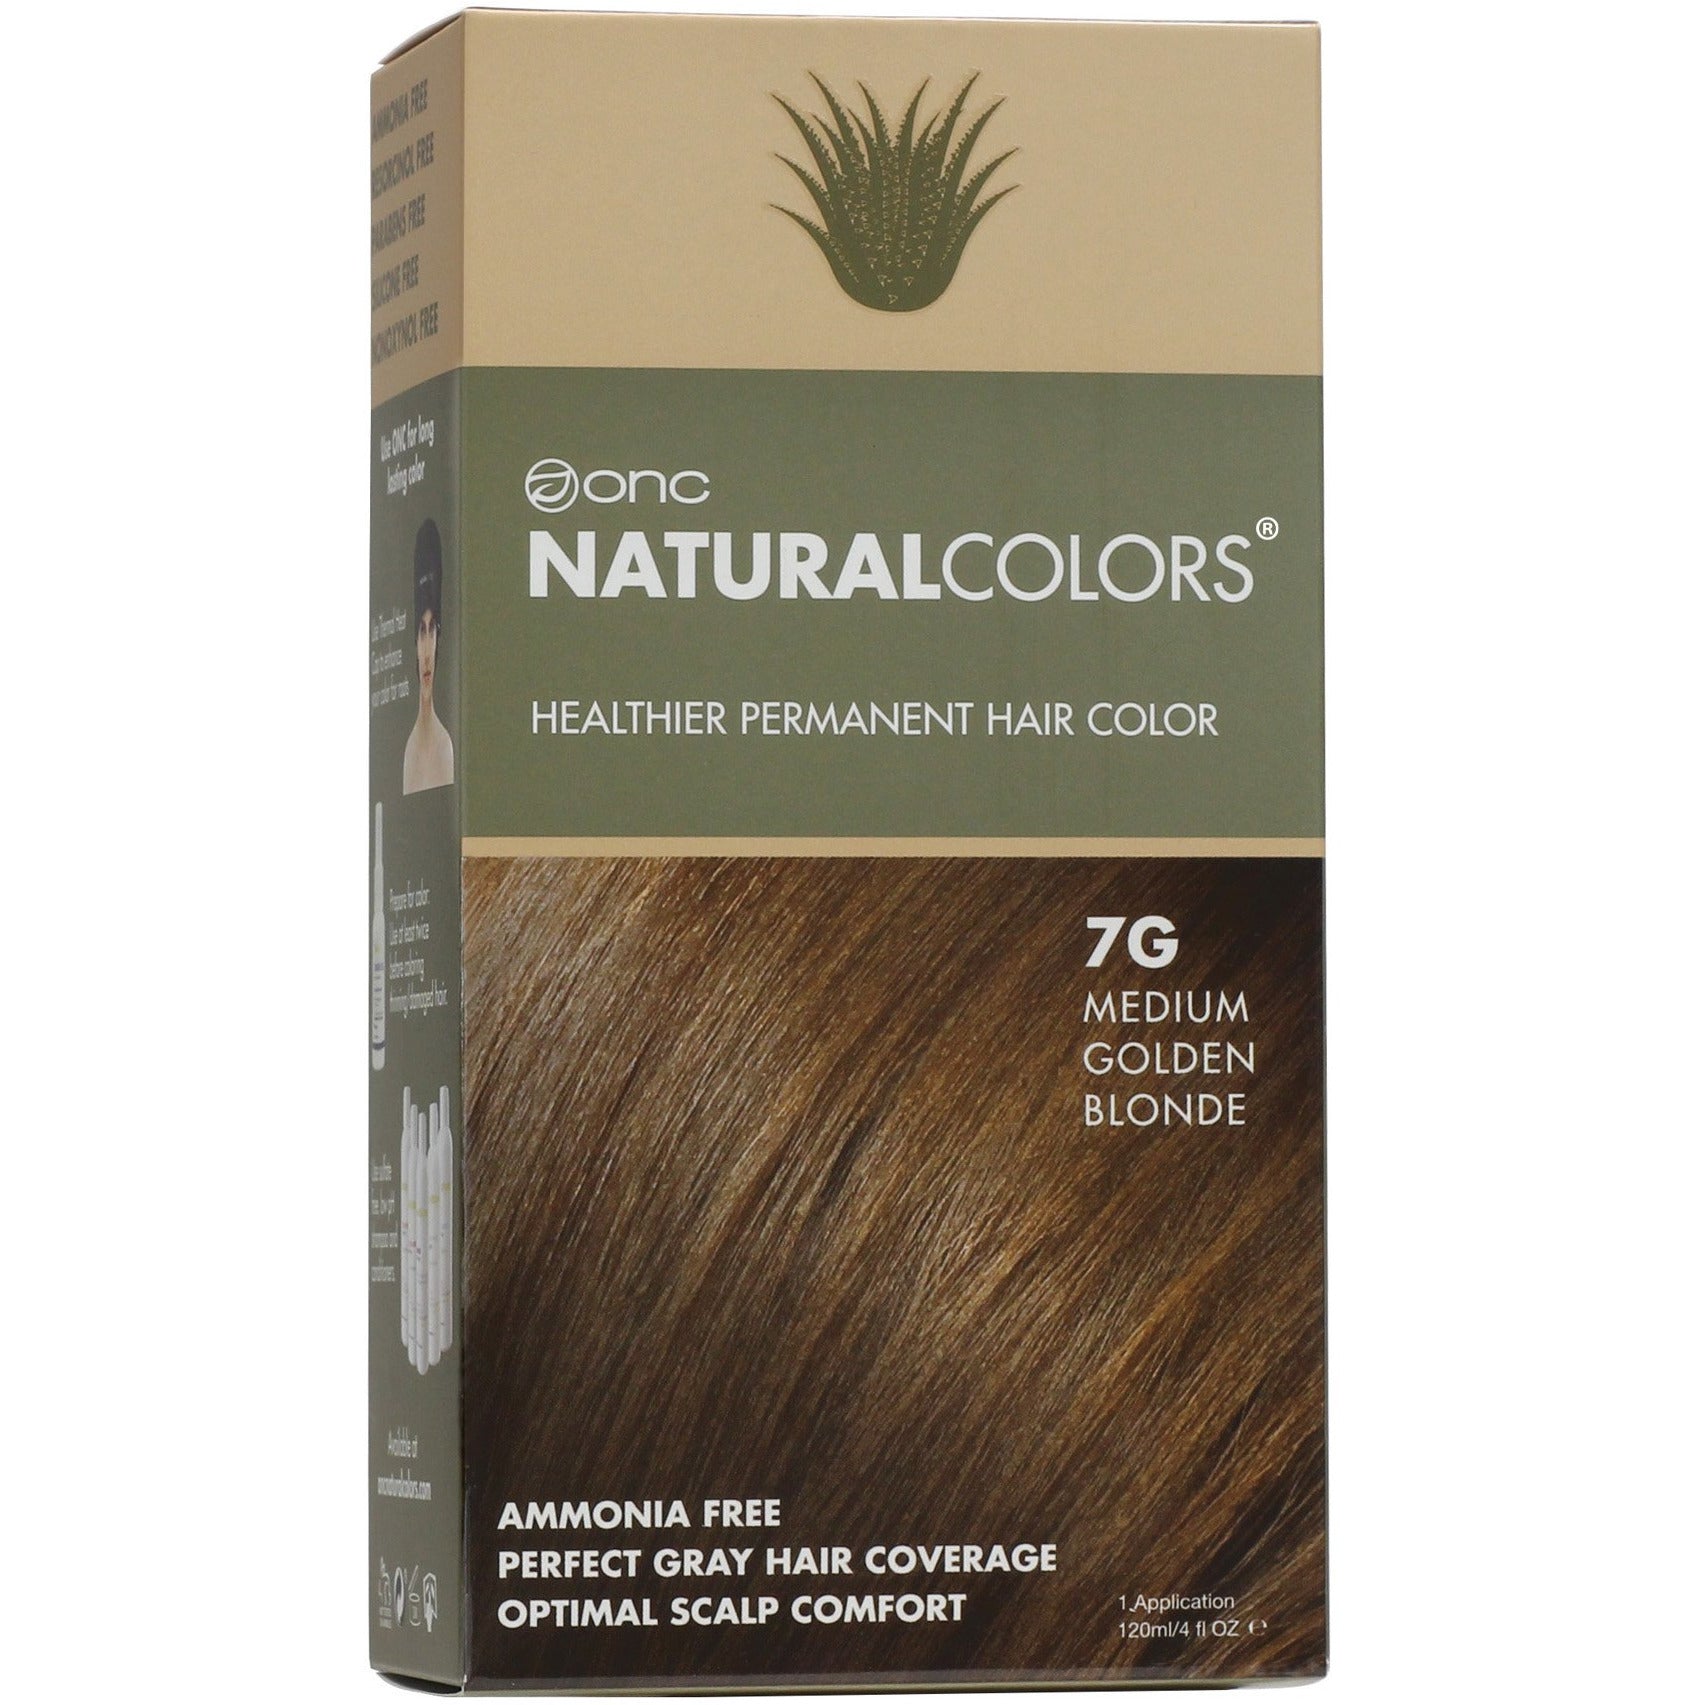 7G Medium Golden Blonde Heat Activated Hair Dye With Organic Ingredients - 120 ml (4 fl. oz)